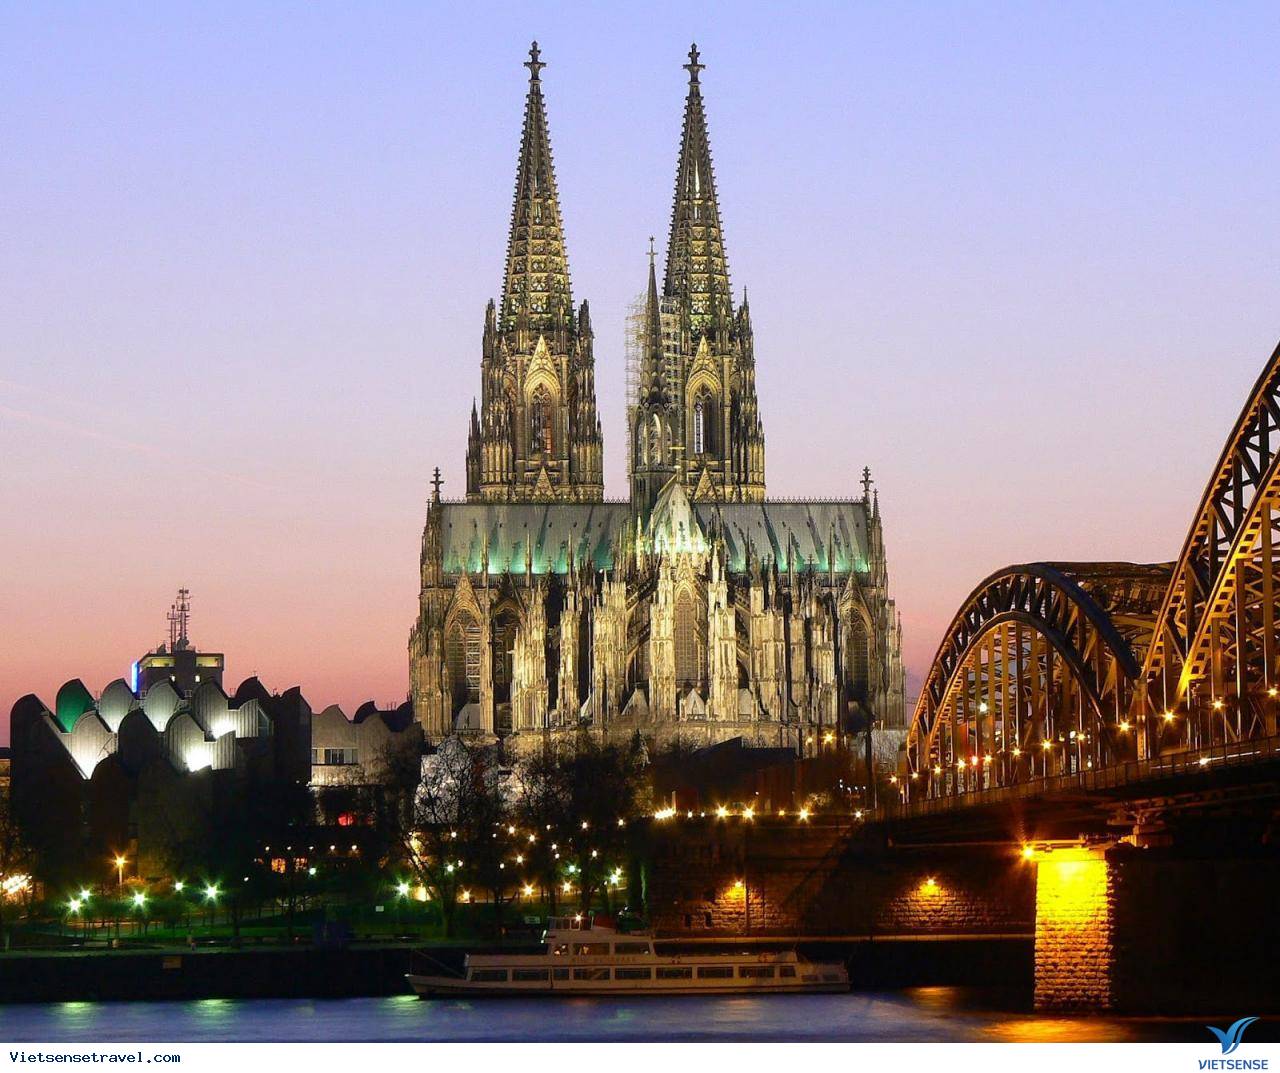 Nhà thờ Cologne được xây dựng với đôi tháp cổ kính